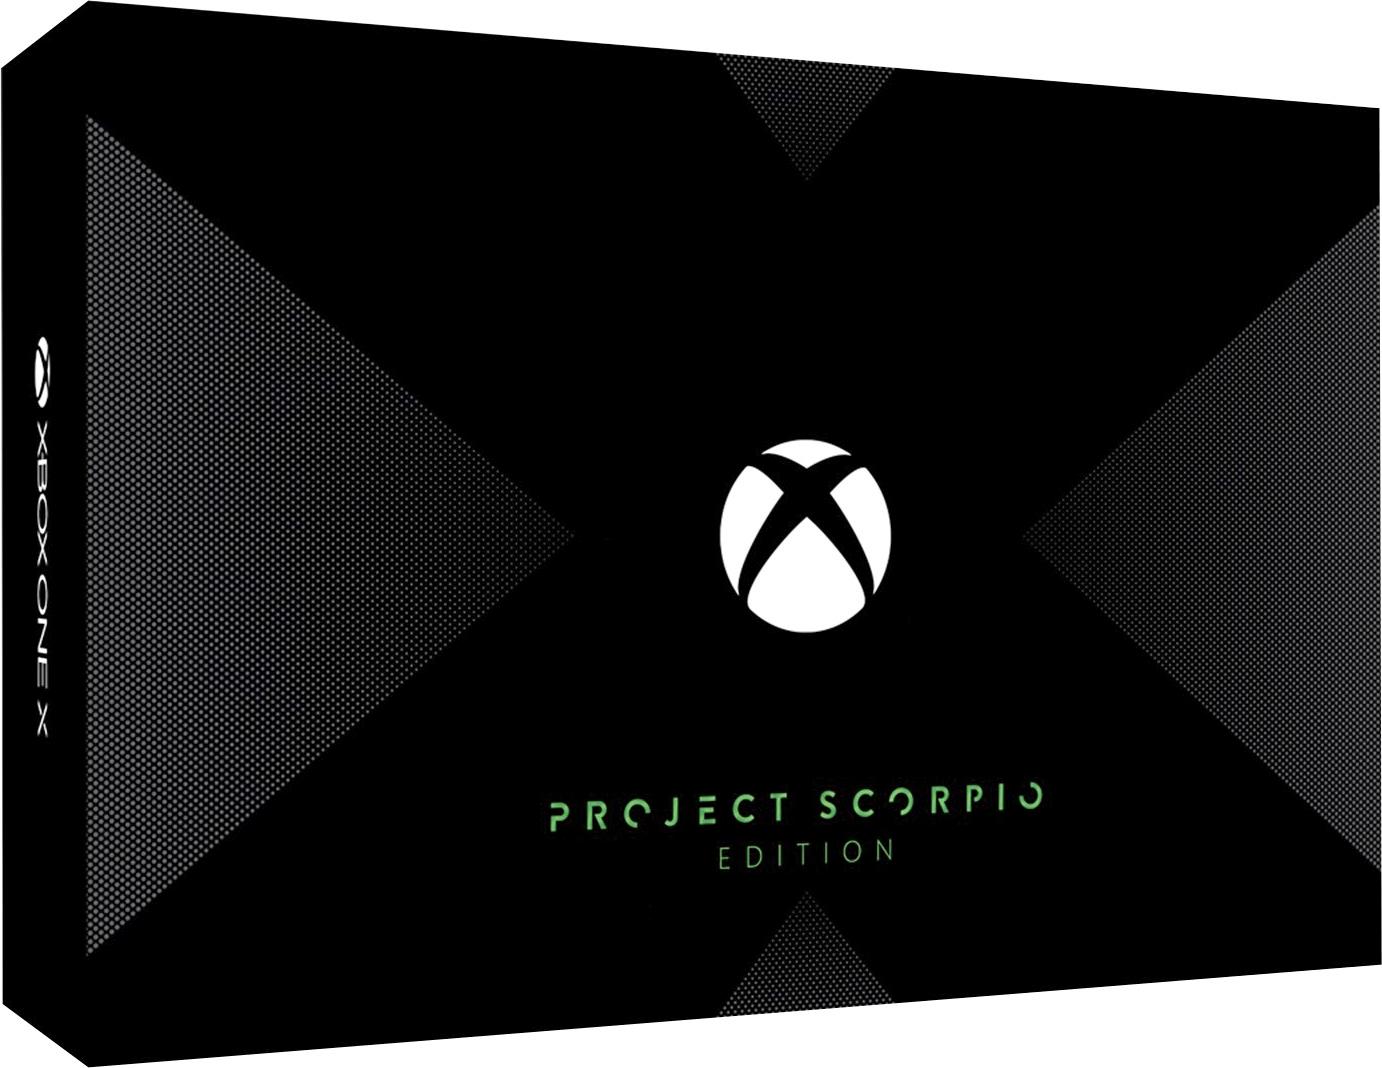 Xbox One X: Project Scorpio Edition sızdırıldı